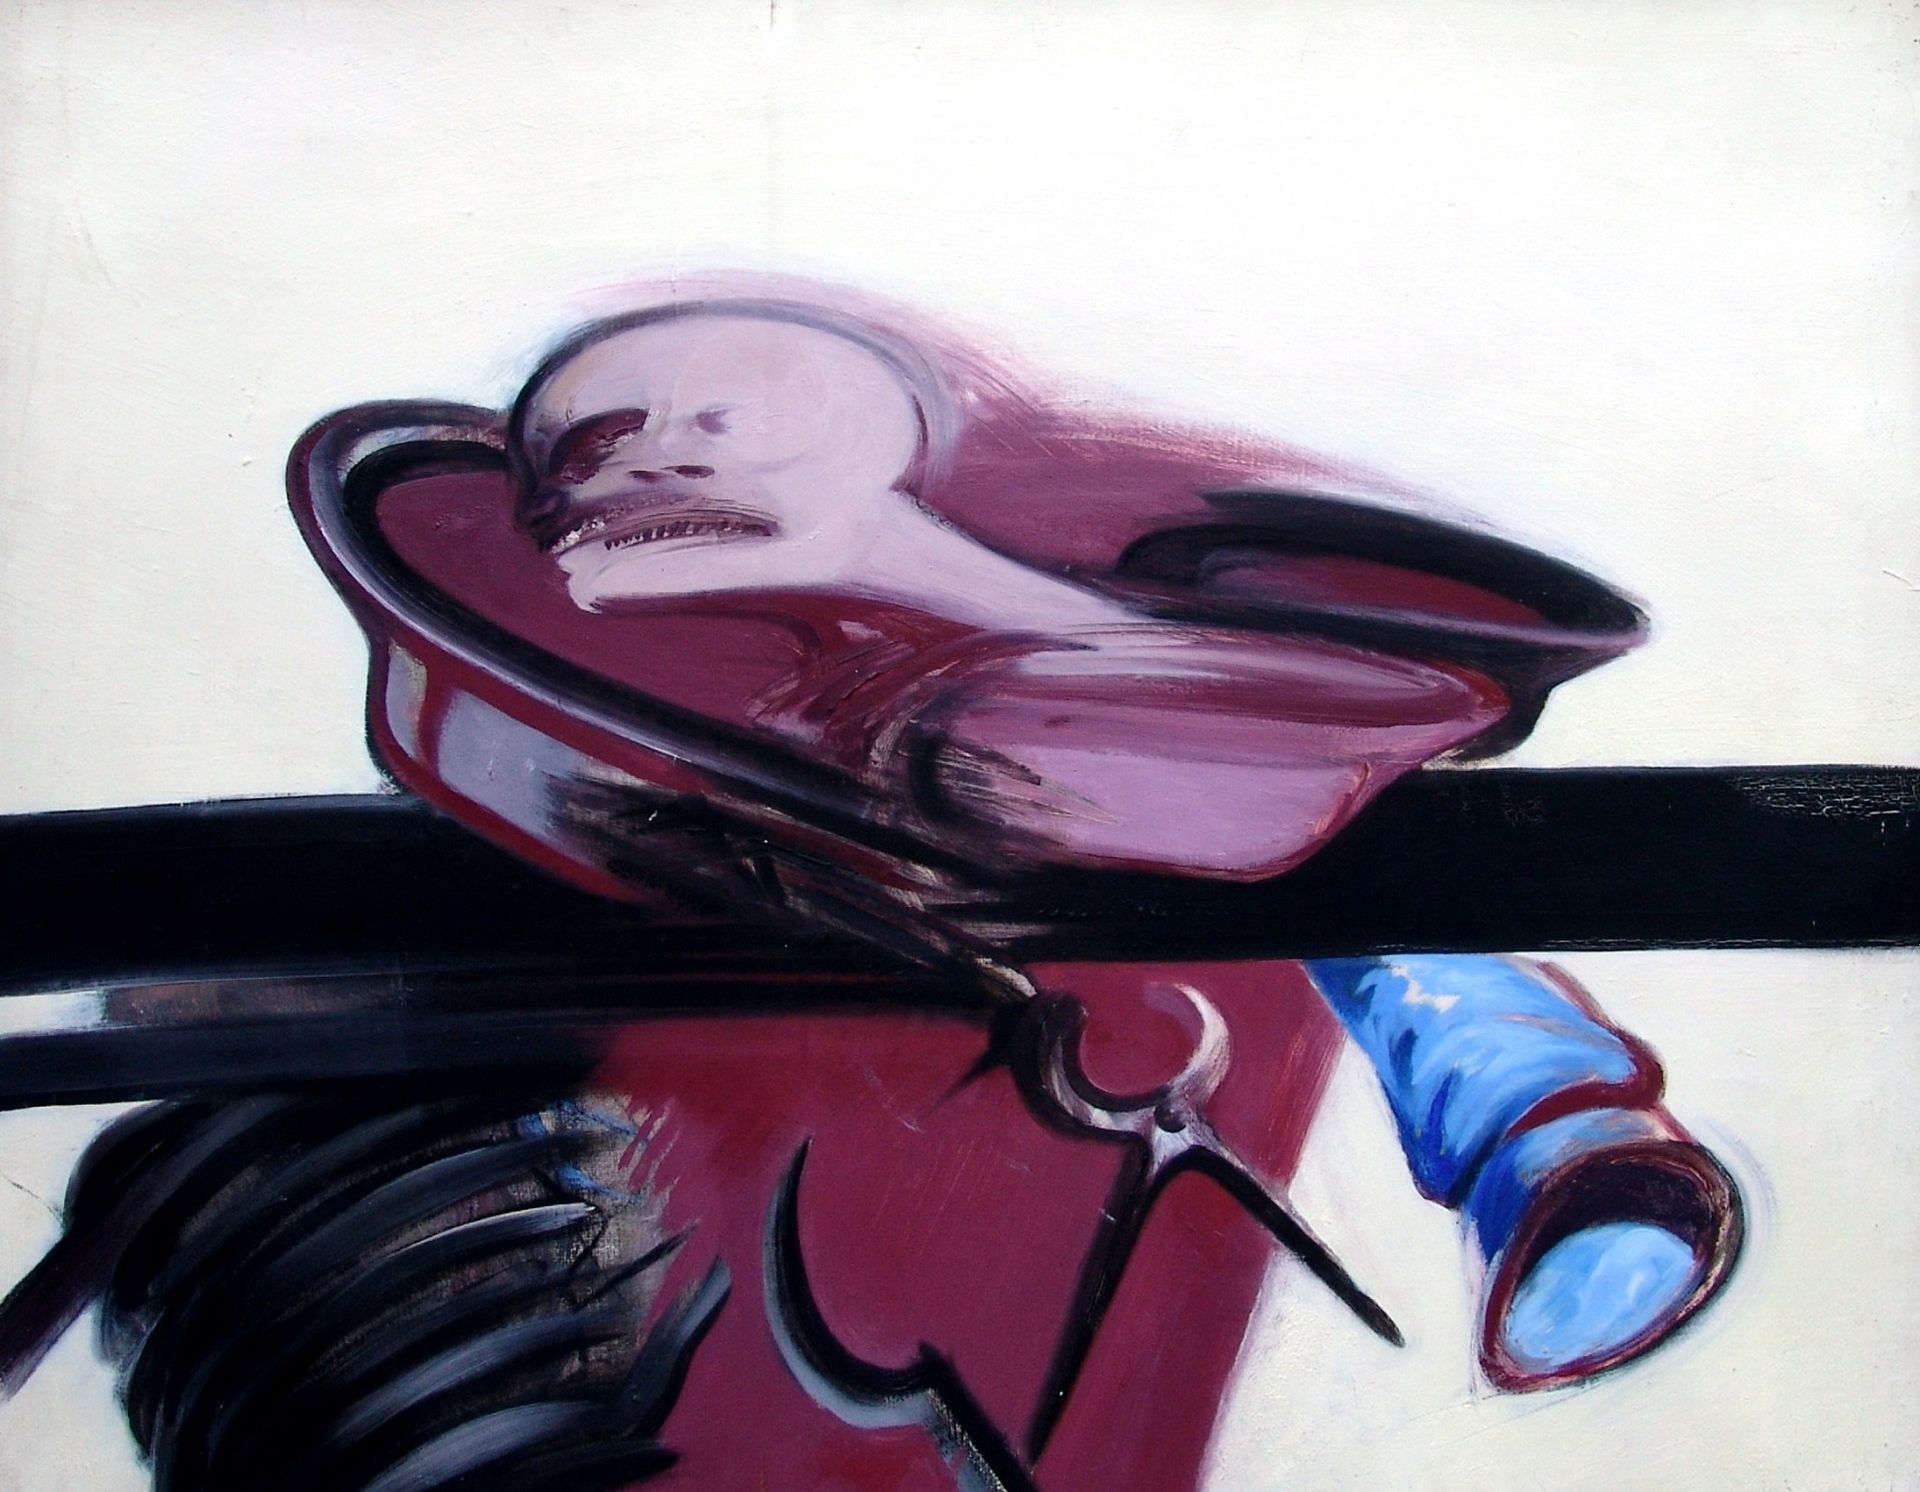 TINO VAGLIERI senza titolo, 1977, olio su tela, 70x90 cm

firma dell'artista in &hellip;